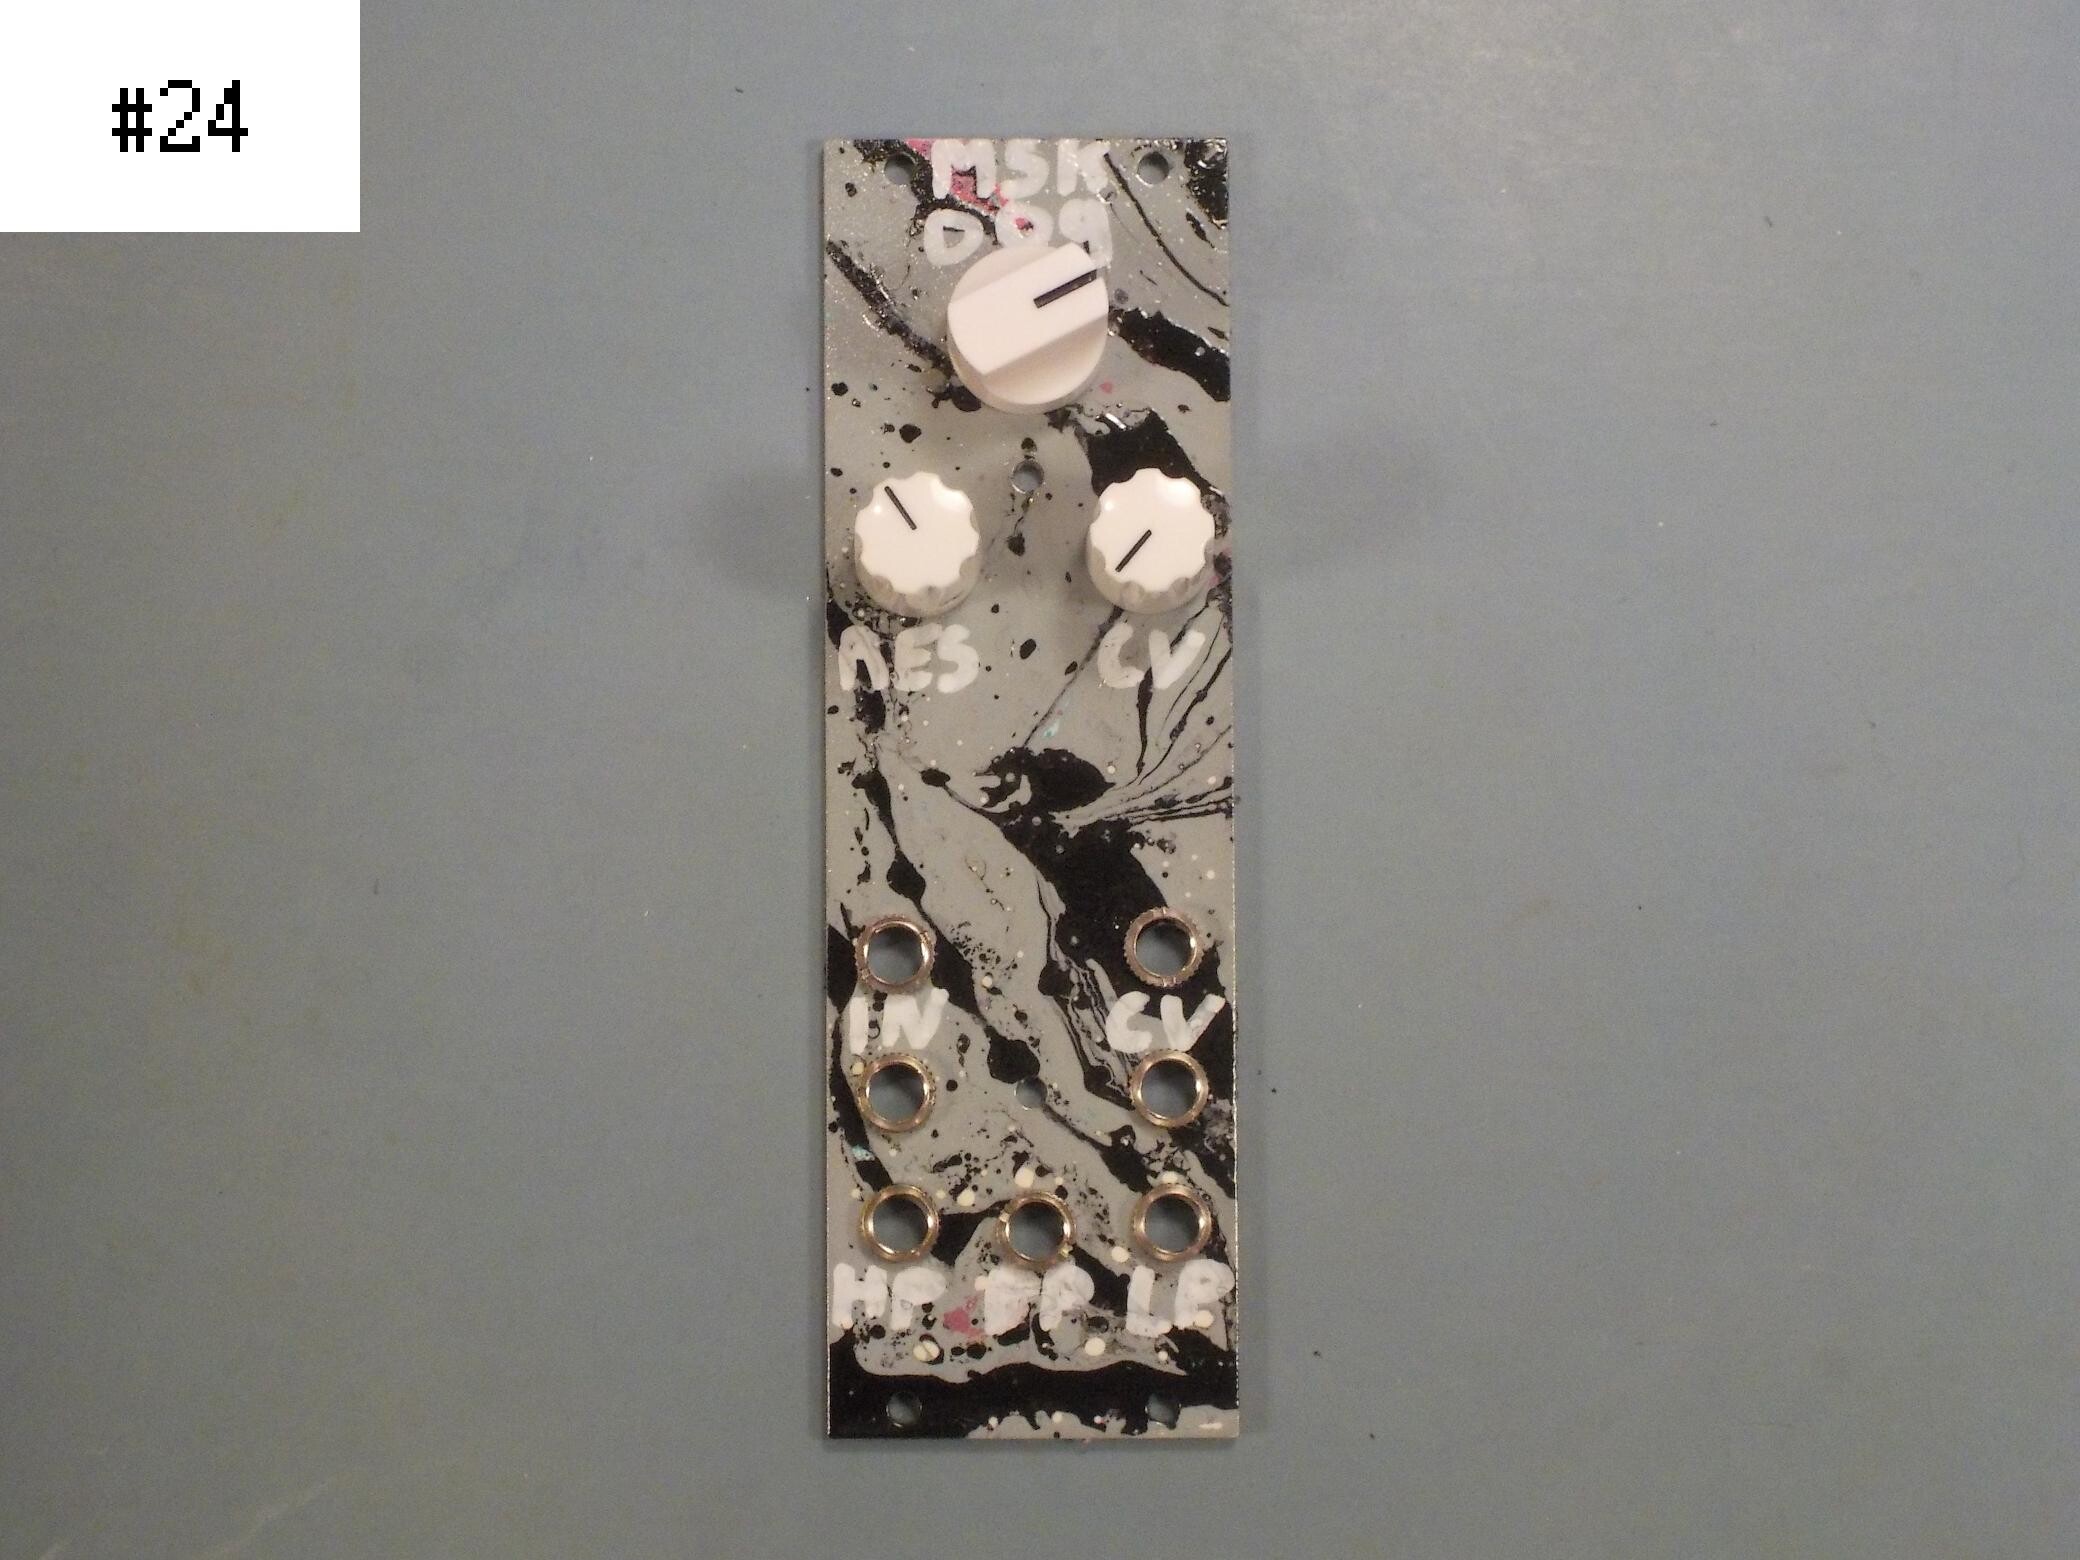 MSK 009 Coiler VCF, custom panel #24